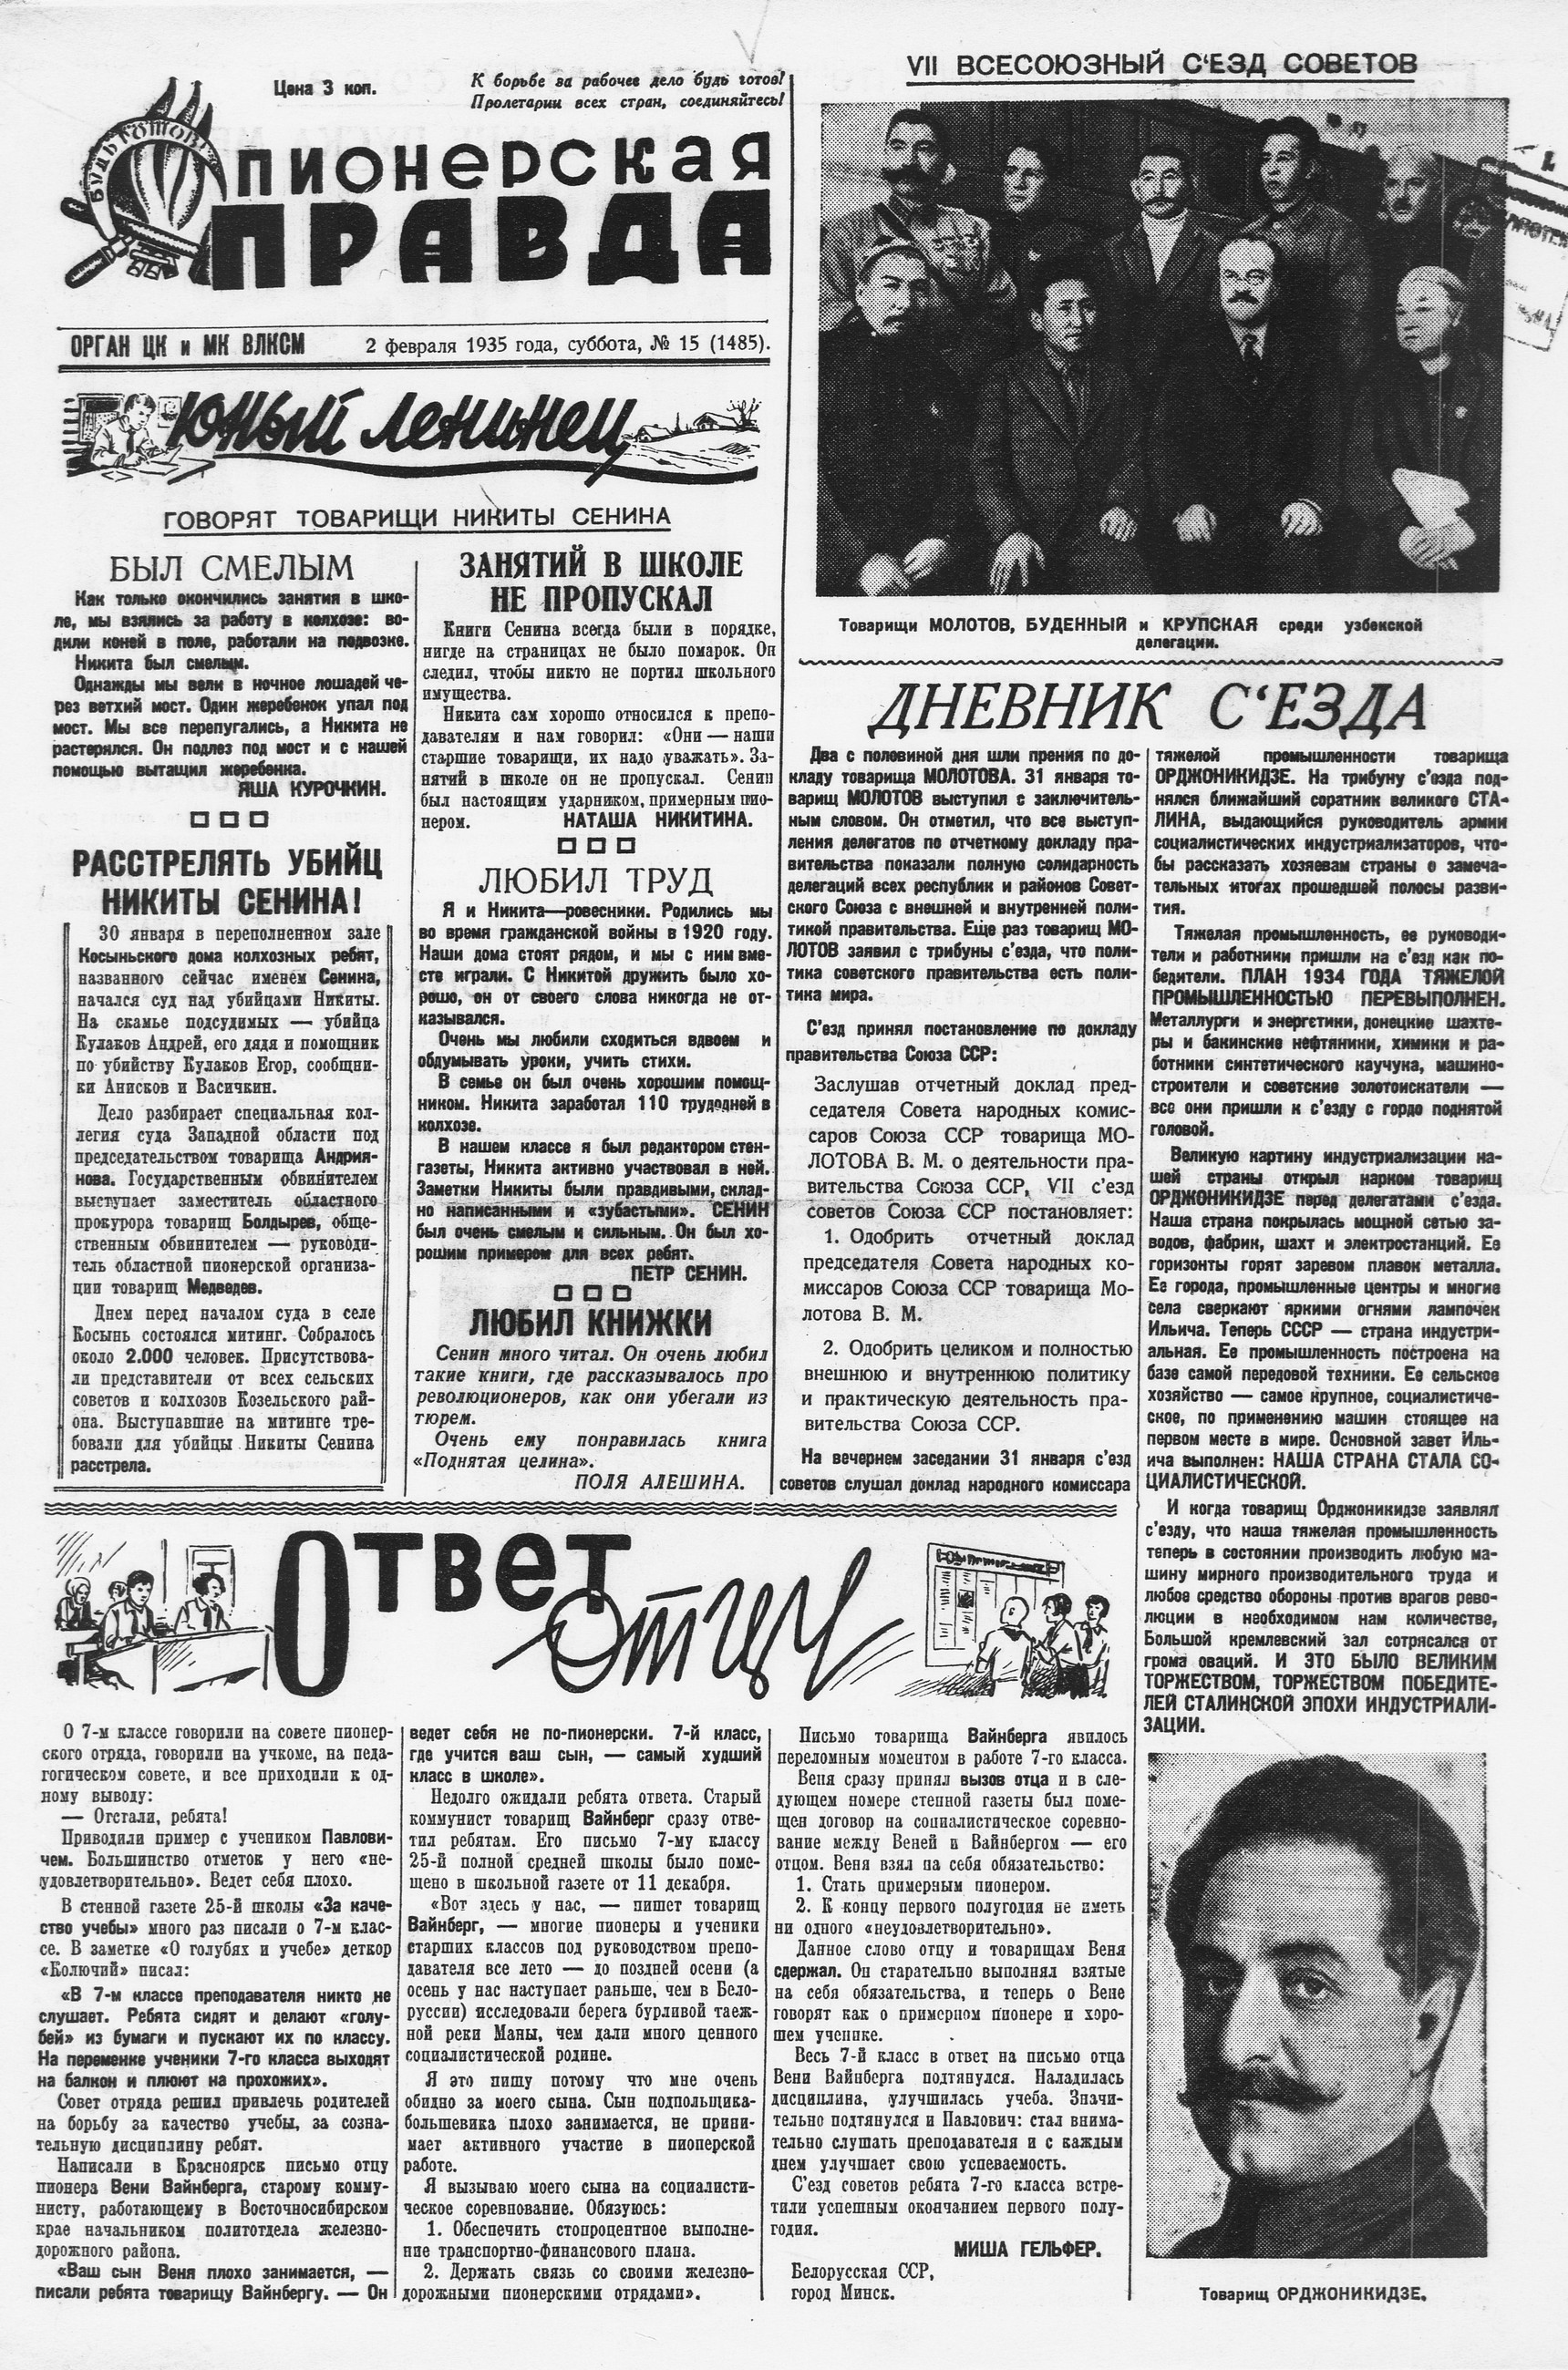 Пионерская правда. 1935. № 015 (1485): Орган ЦК и МК ВЛКСМ - 1935